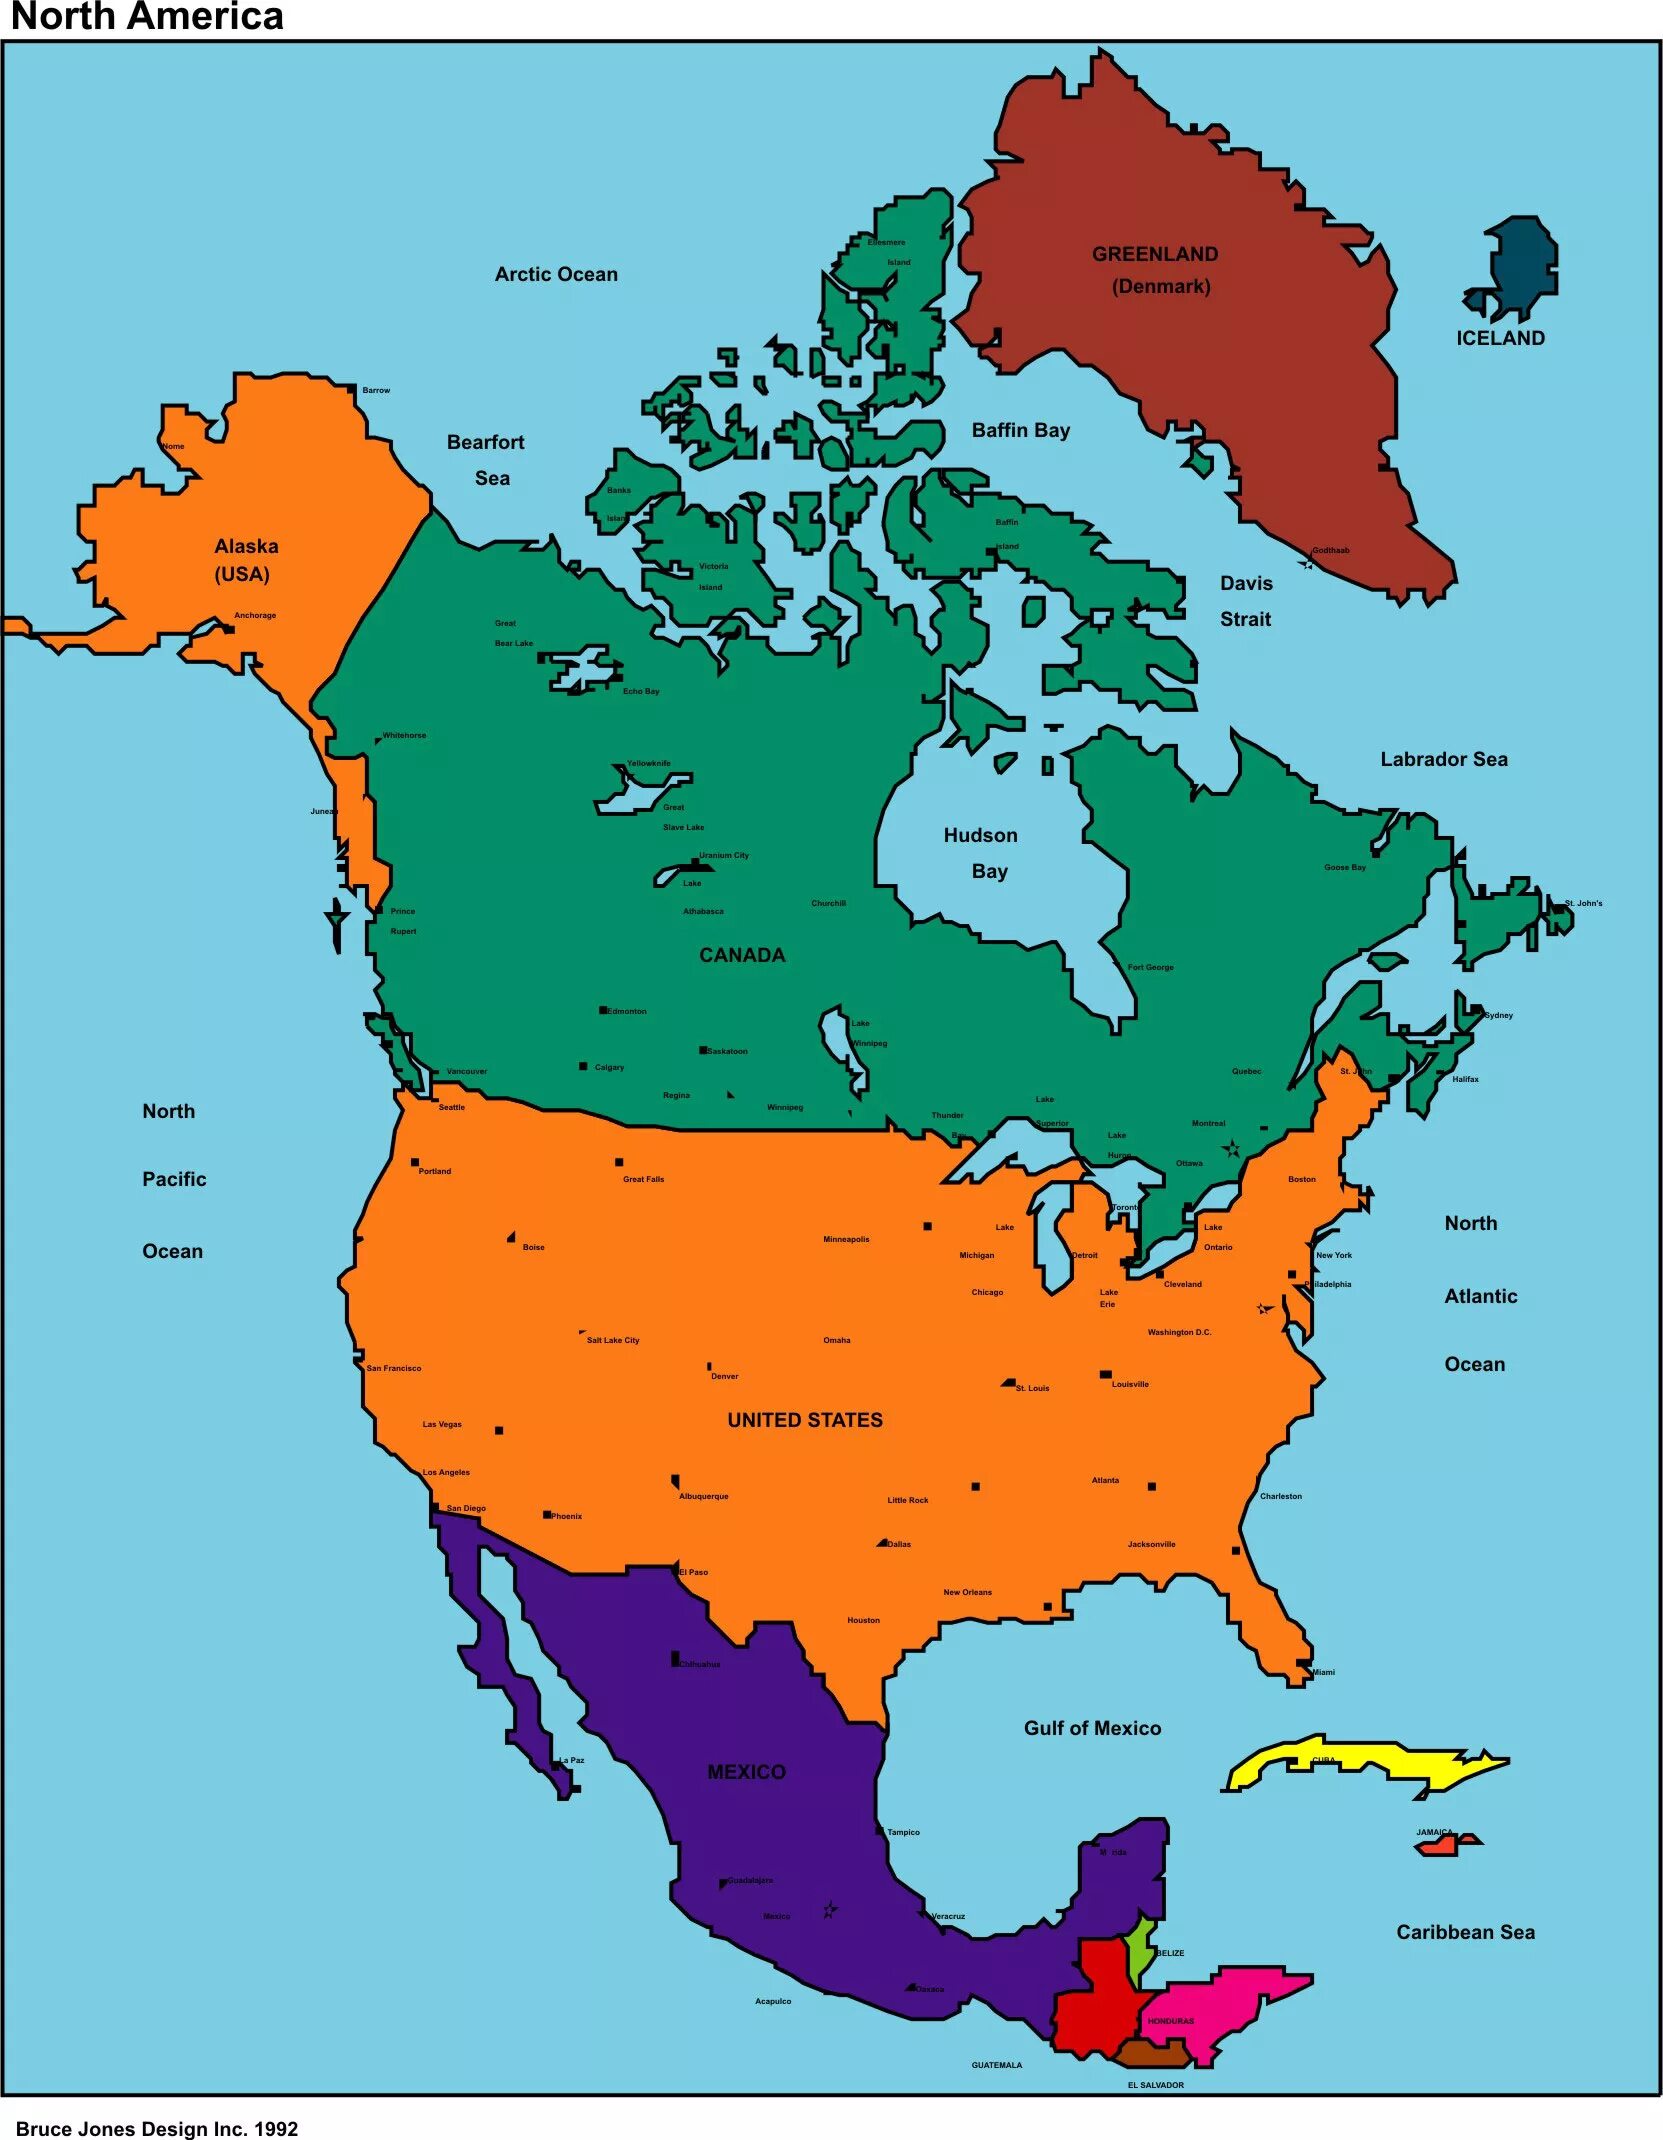 Название государства и название столицы северной америки. Государства Северной Америки на карте. Карта Северной Америки со странами. Нортх Америка.